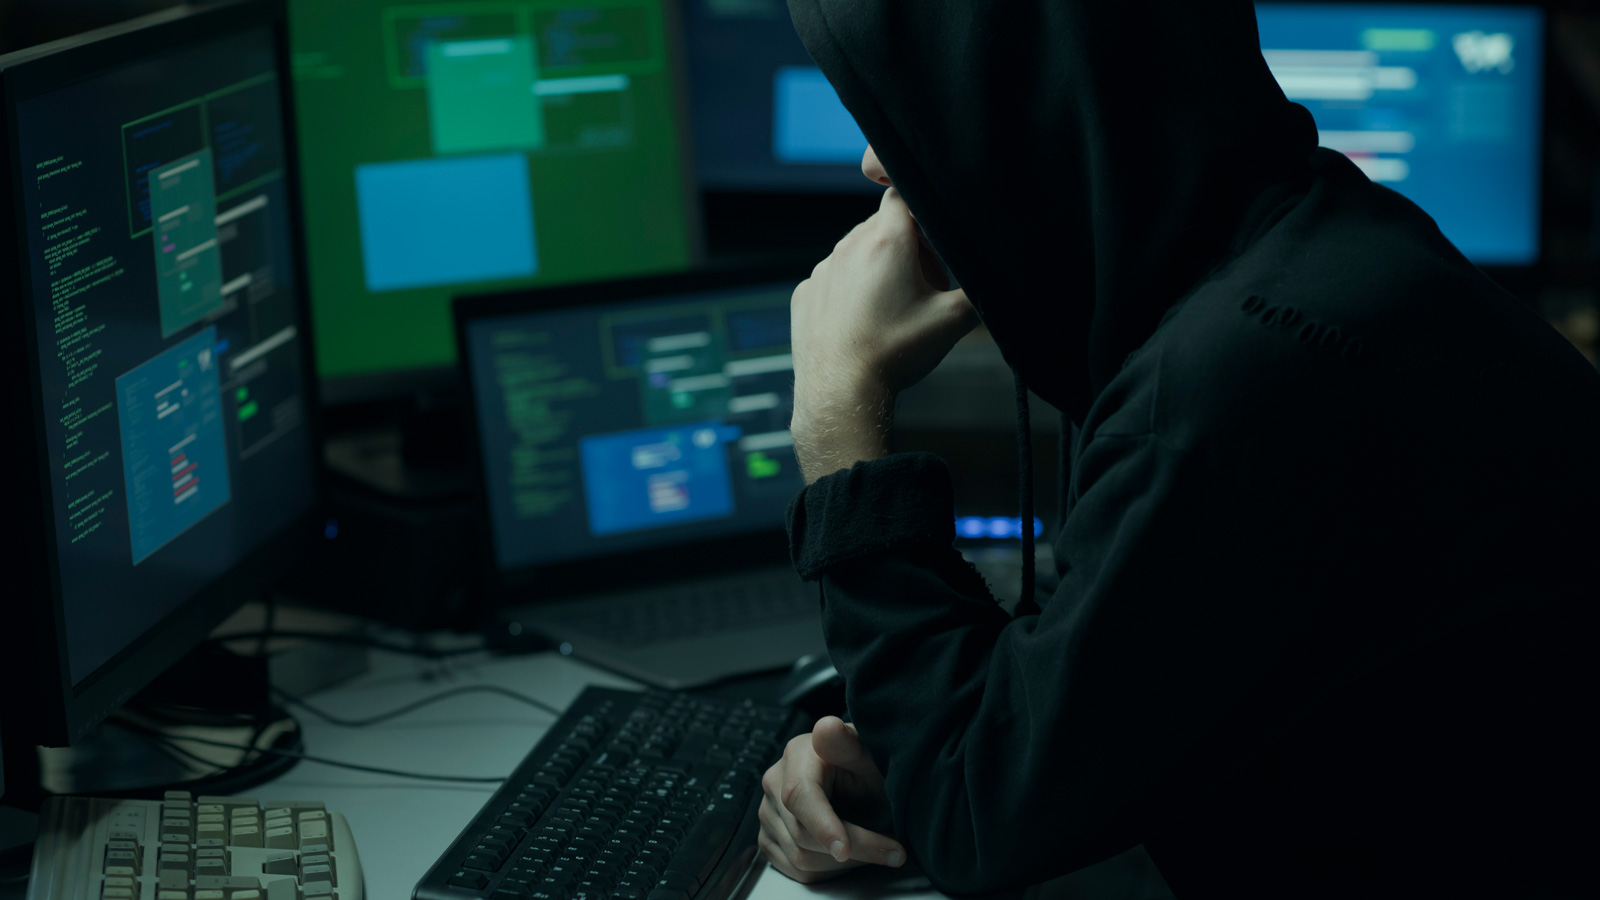 LIDL padł ofiarą cyberprzestępców kamil sadkowski mediarun hacker cyberprzestepca komputer 2019